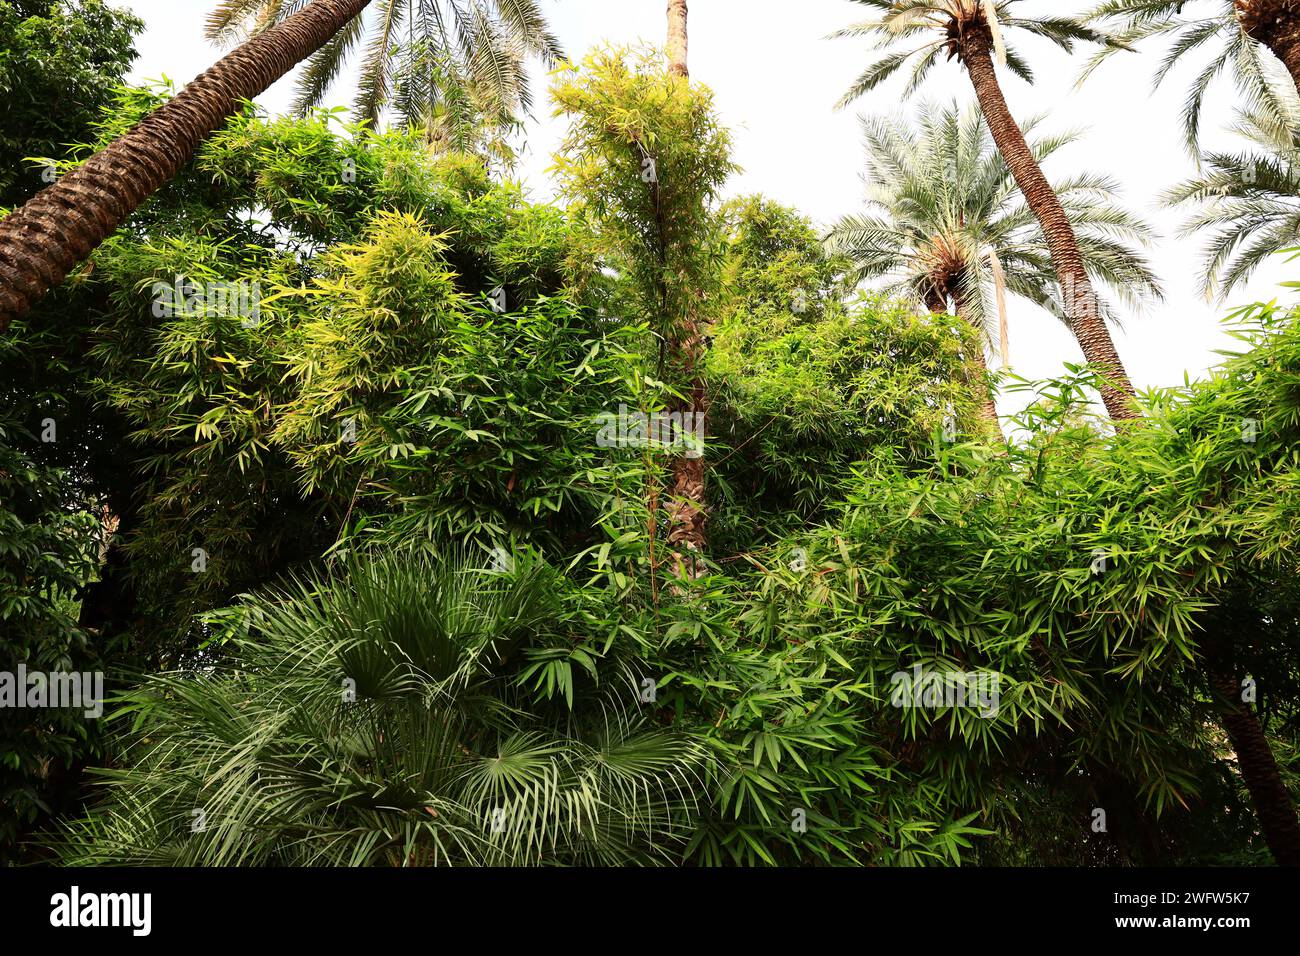 The Majorelle Garden  is a one-hectare botanical garden and artist's landscape garden in Marrakech, Morocco. Stock Photo